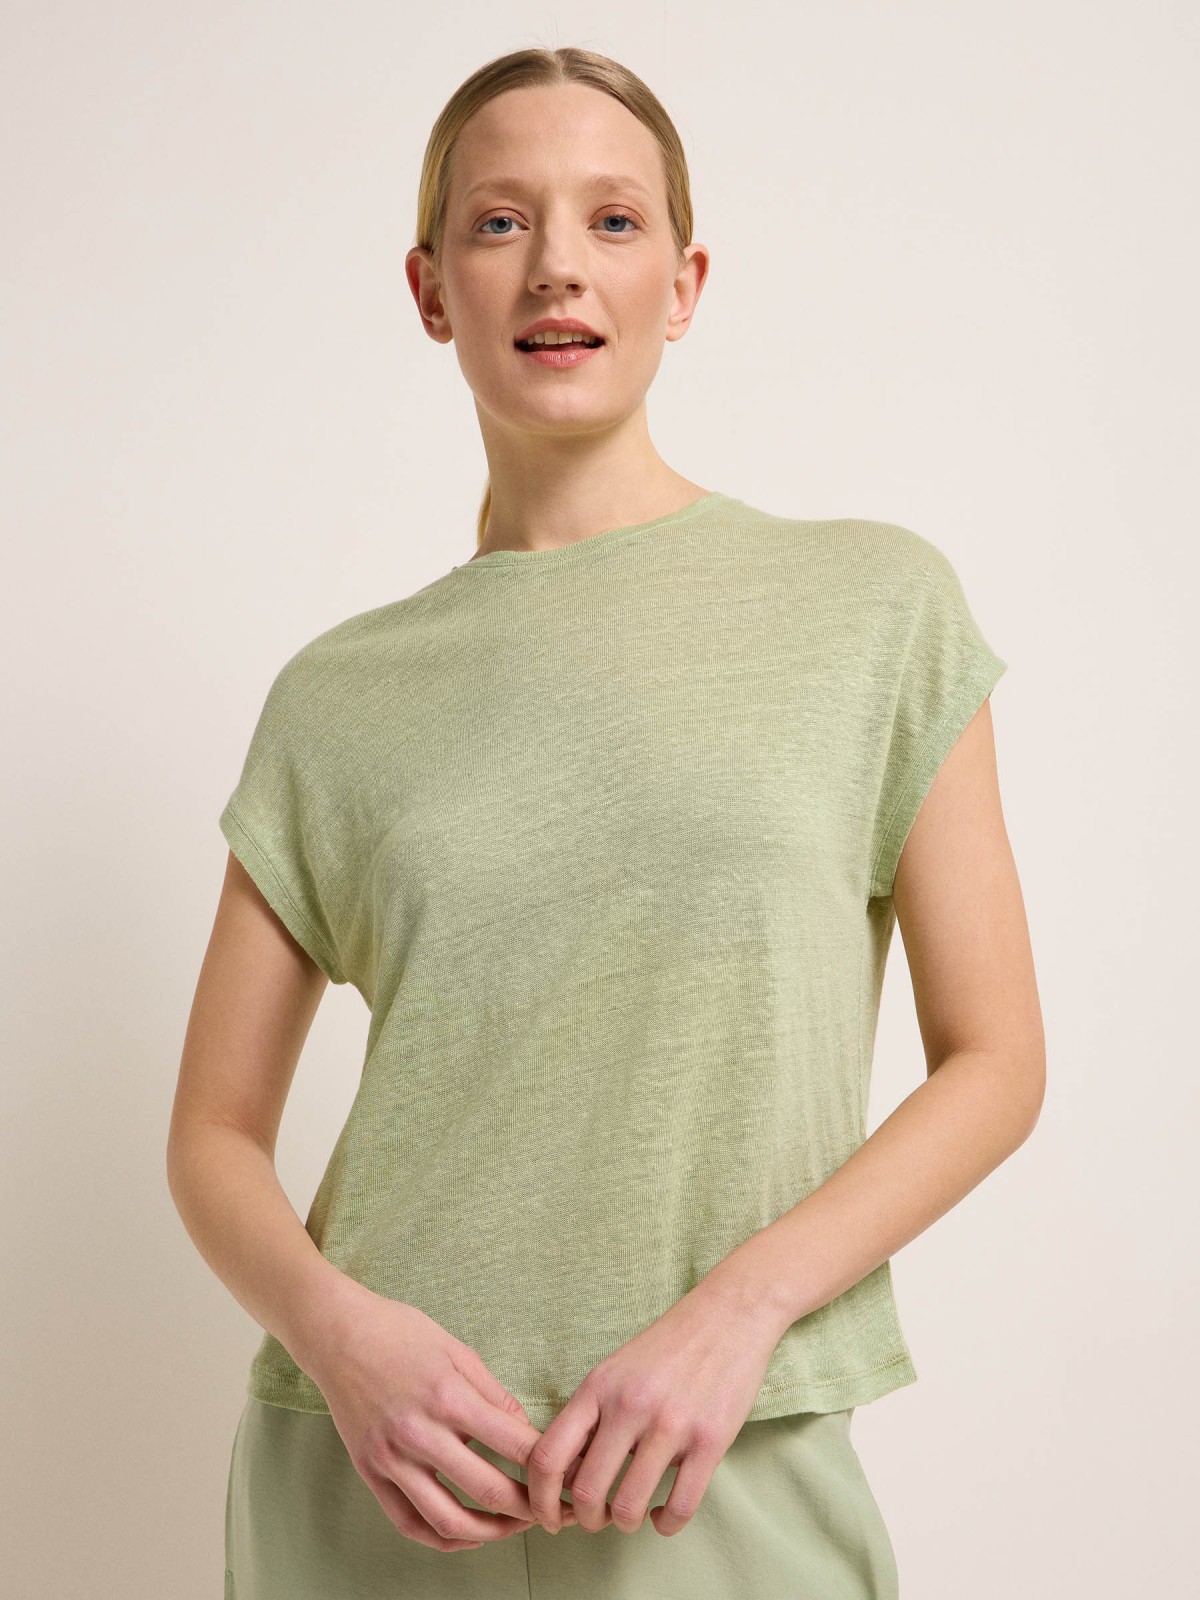 Linen shirt made from organic linen - wasabi